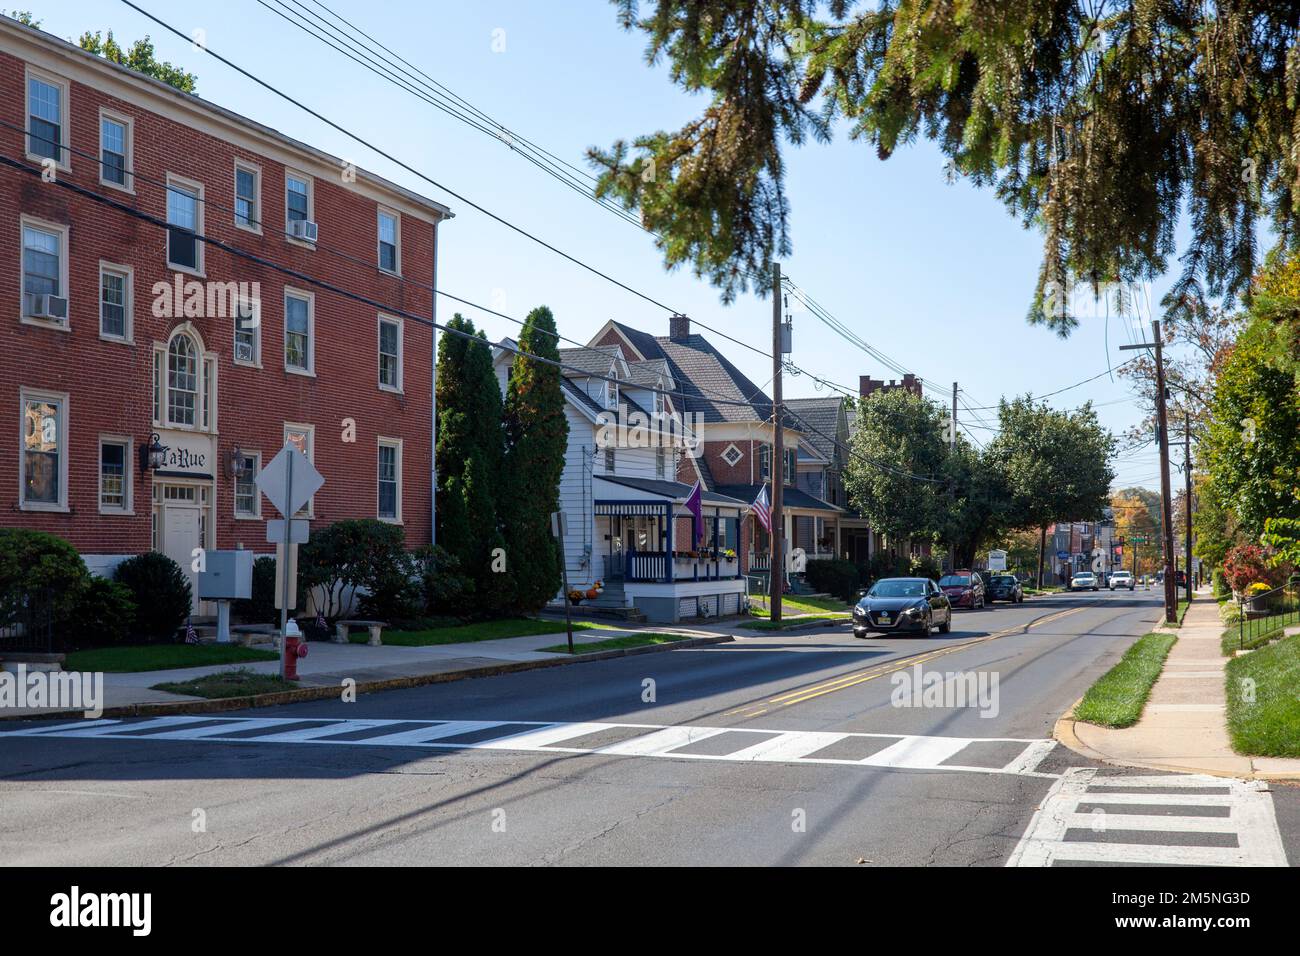 Washington Avenue in Newtown Pennsylvania, USA Stock Photo